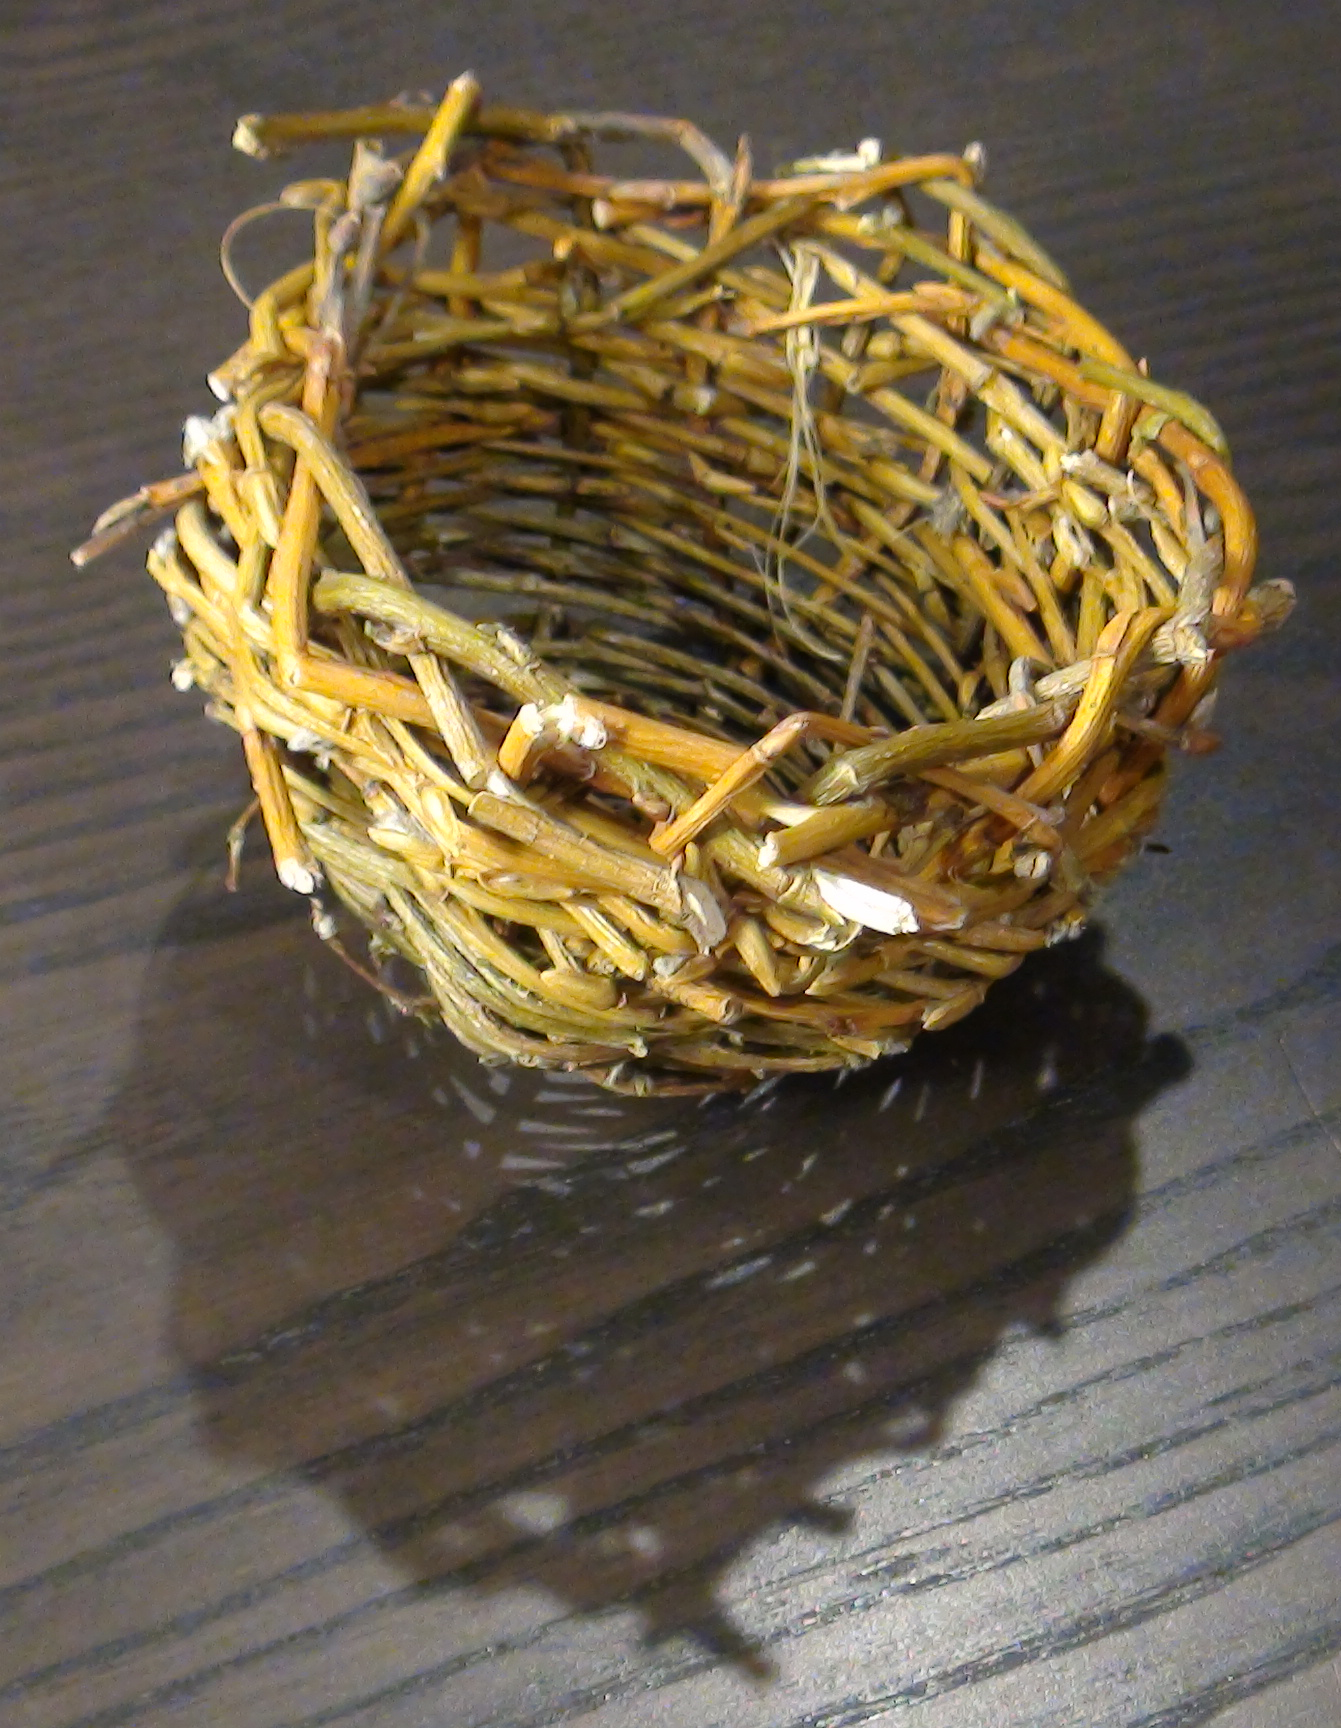 Willow basket, yellow loose